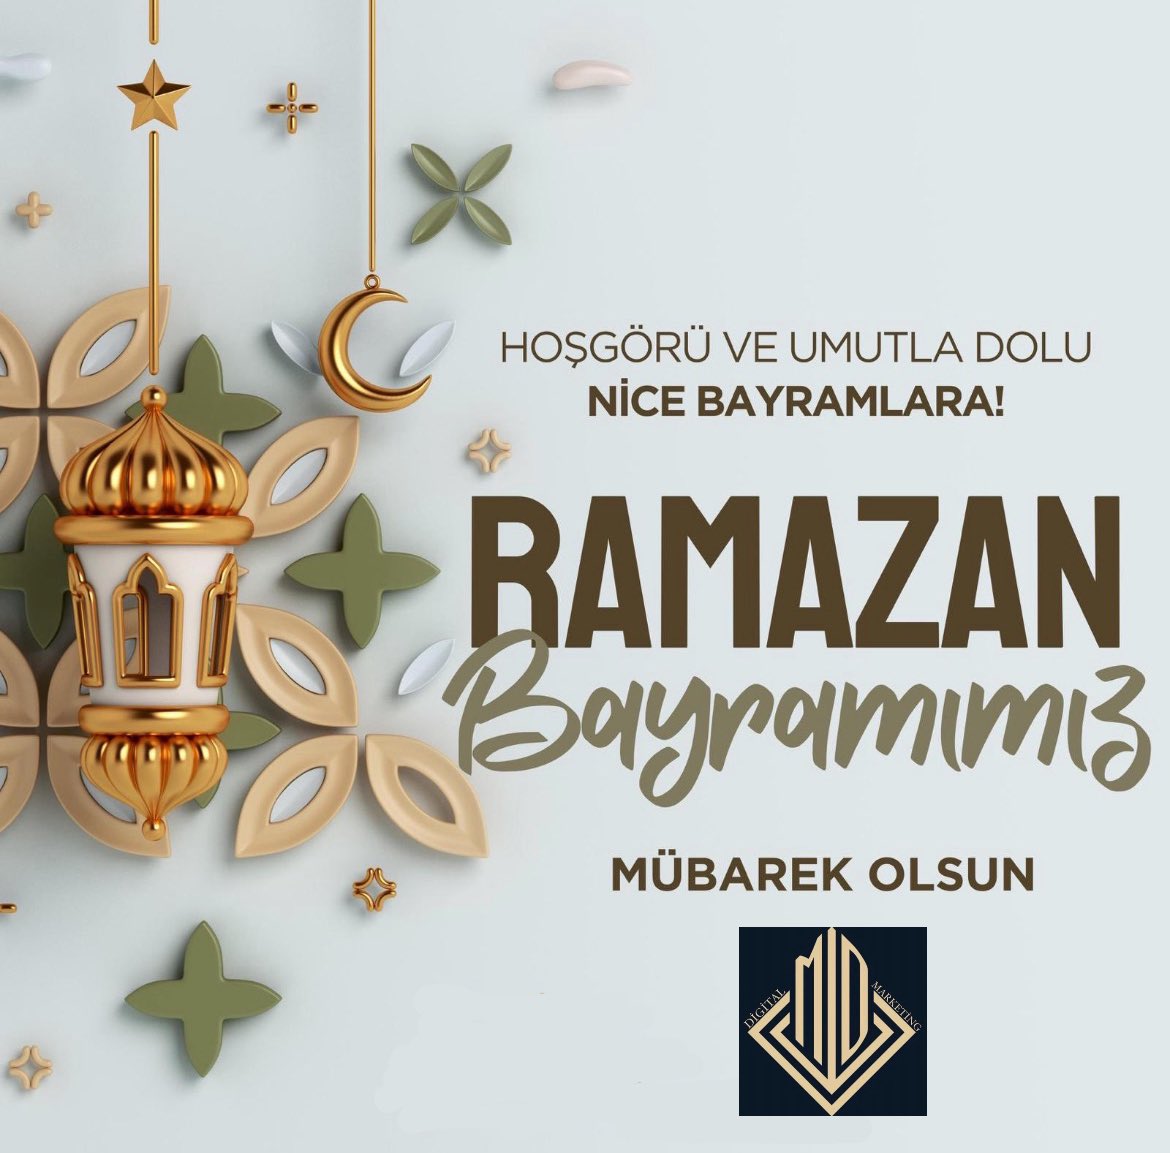 Sevdiklerinizle birlikte; sağlık, mutluluk ve huzur dolu bir bayram geçirmenizi dilerim. #Ramazanbayramı nız mübarek olsun. İyi bayramlar. 🍬 #iyibayramlartürkiye